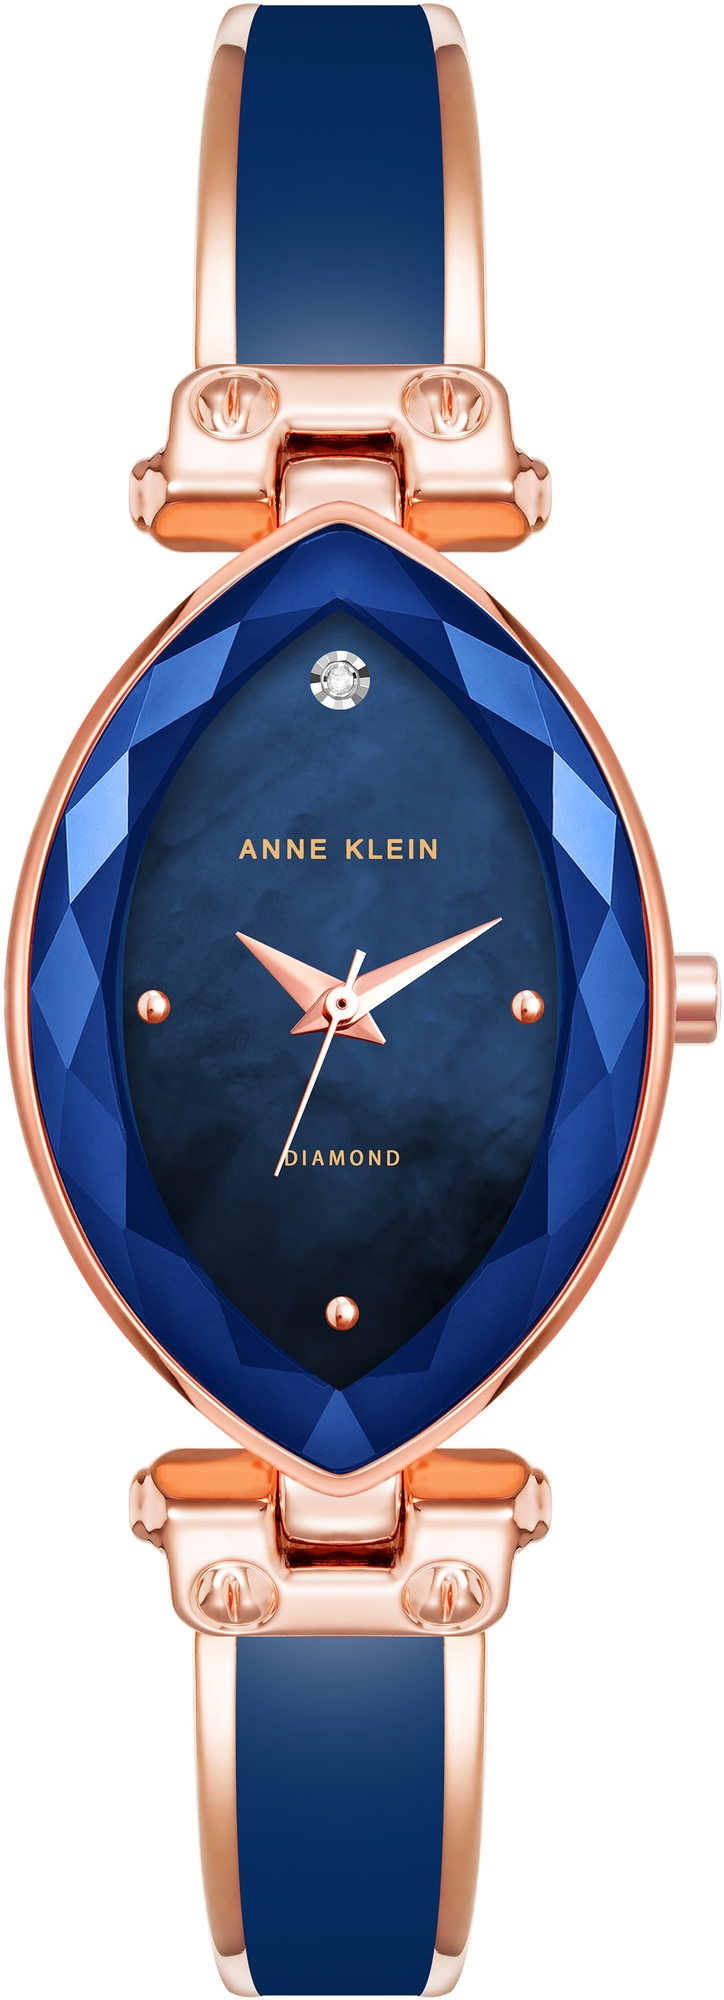 Наручные часы Anne Klein 4018NVRG наручные часы anne klein 3922wtrg